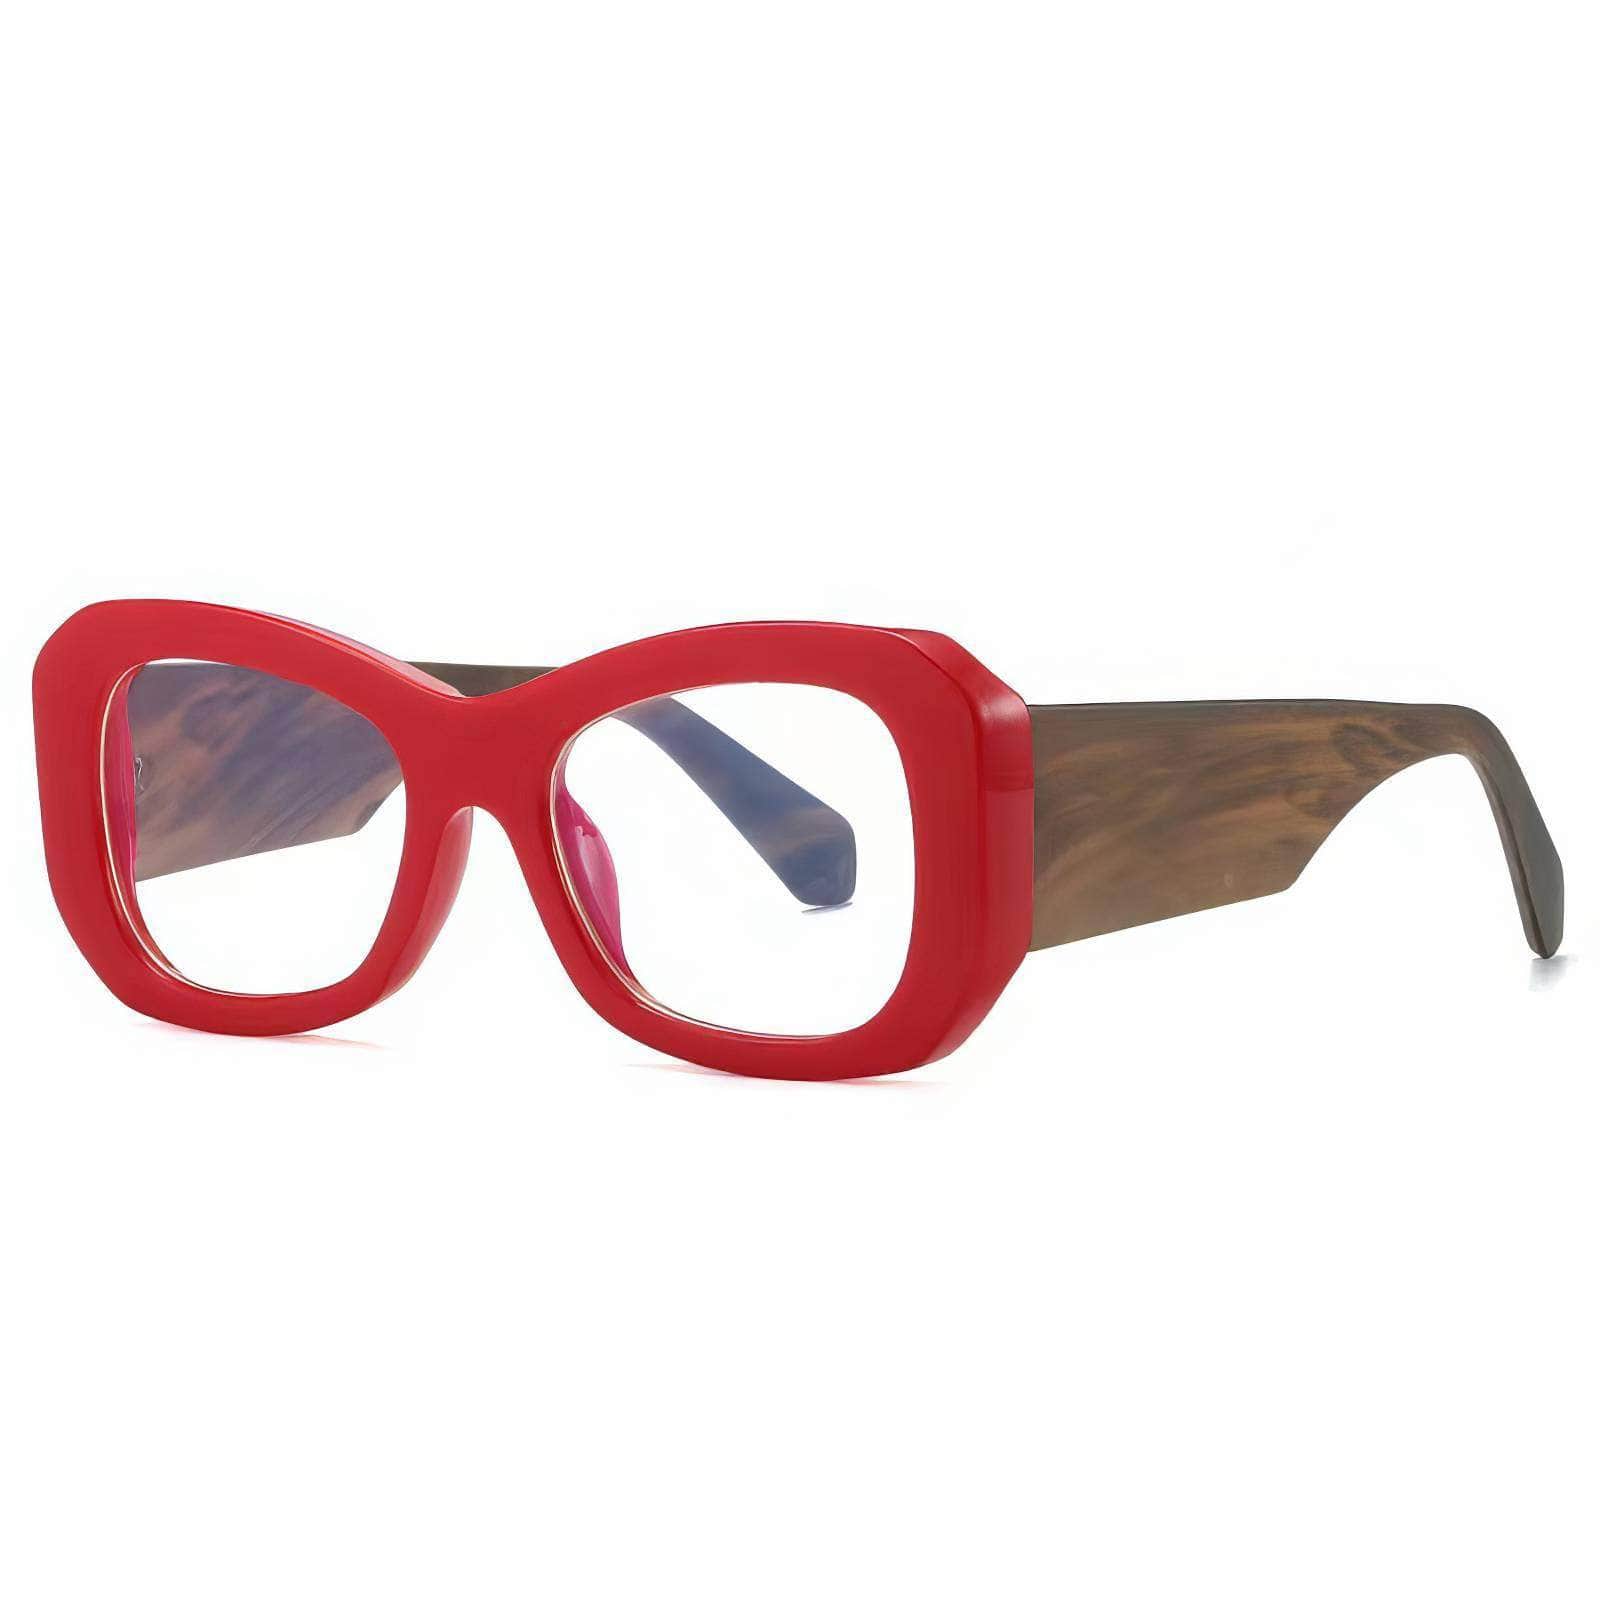 Funky Trending Square Sunglasses Red/White / Resin